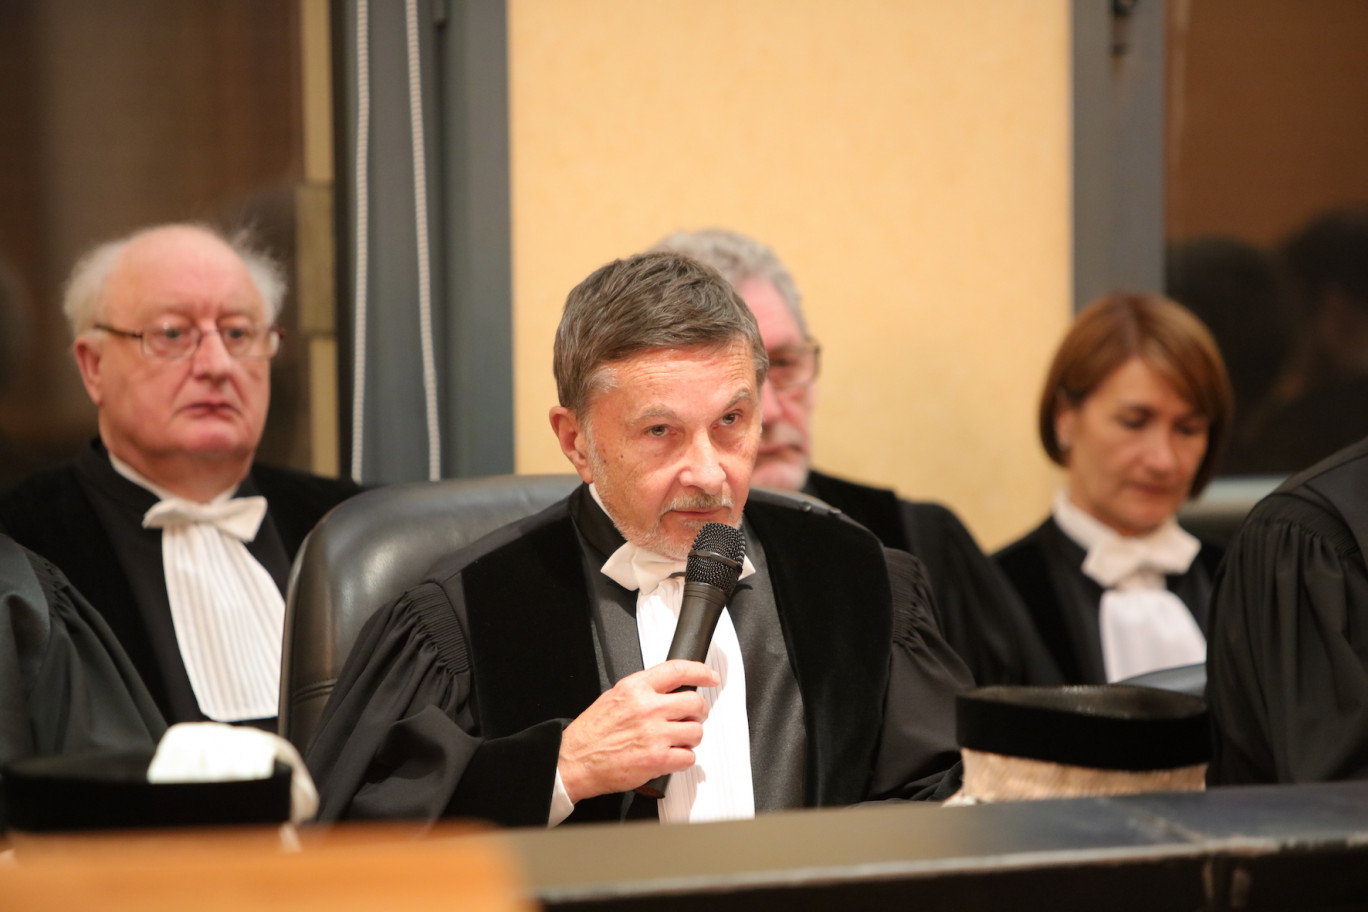 Le président du tribunal de commerce de Douai-Cambrai, Daniel Mouy, a fait un rappel de l’activité de son tribunal en 2018, avant d’évoquer les nouveaux défis auxquels il sera confronté dans les années à venir. ©ACT'STUDIO